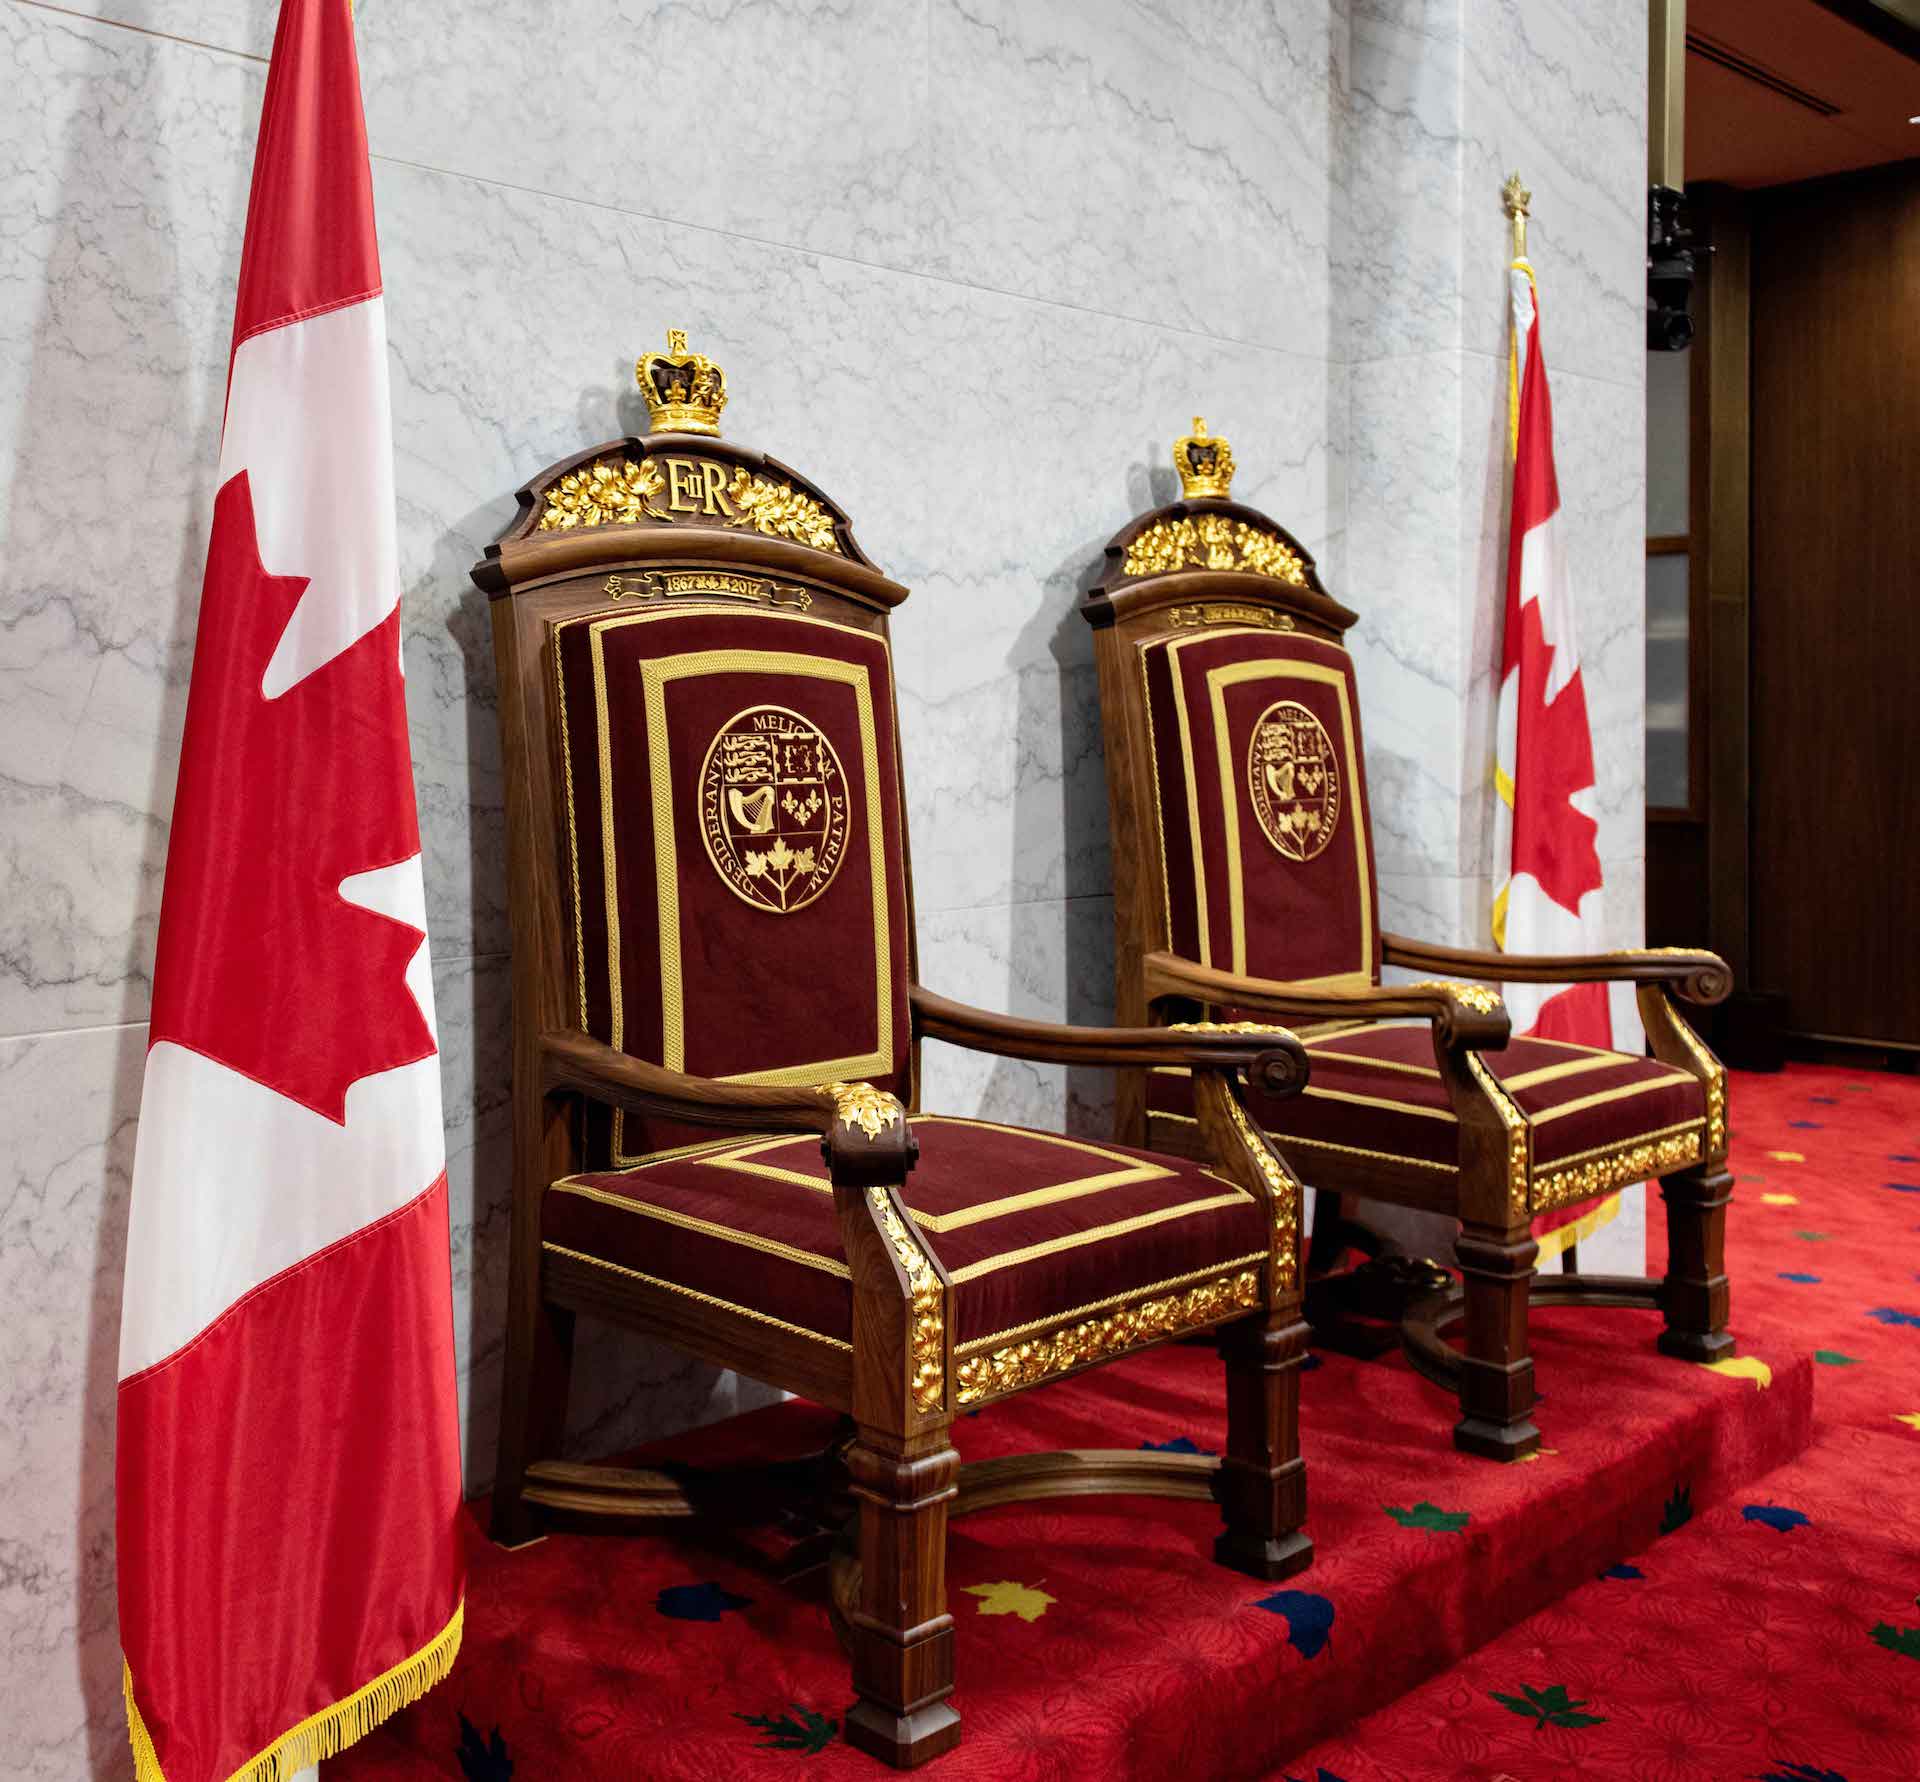 Thrones in the Senate of Canada Building